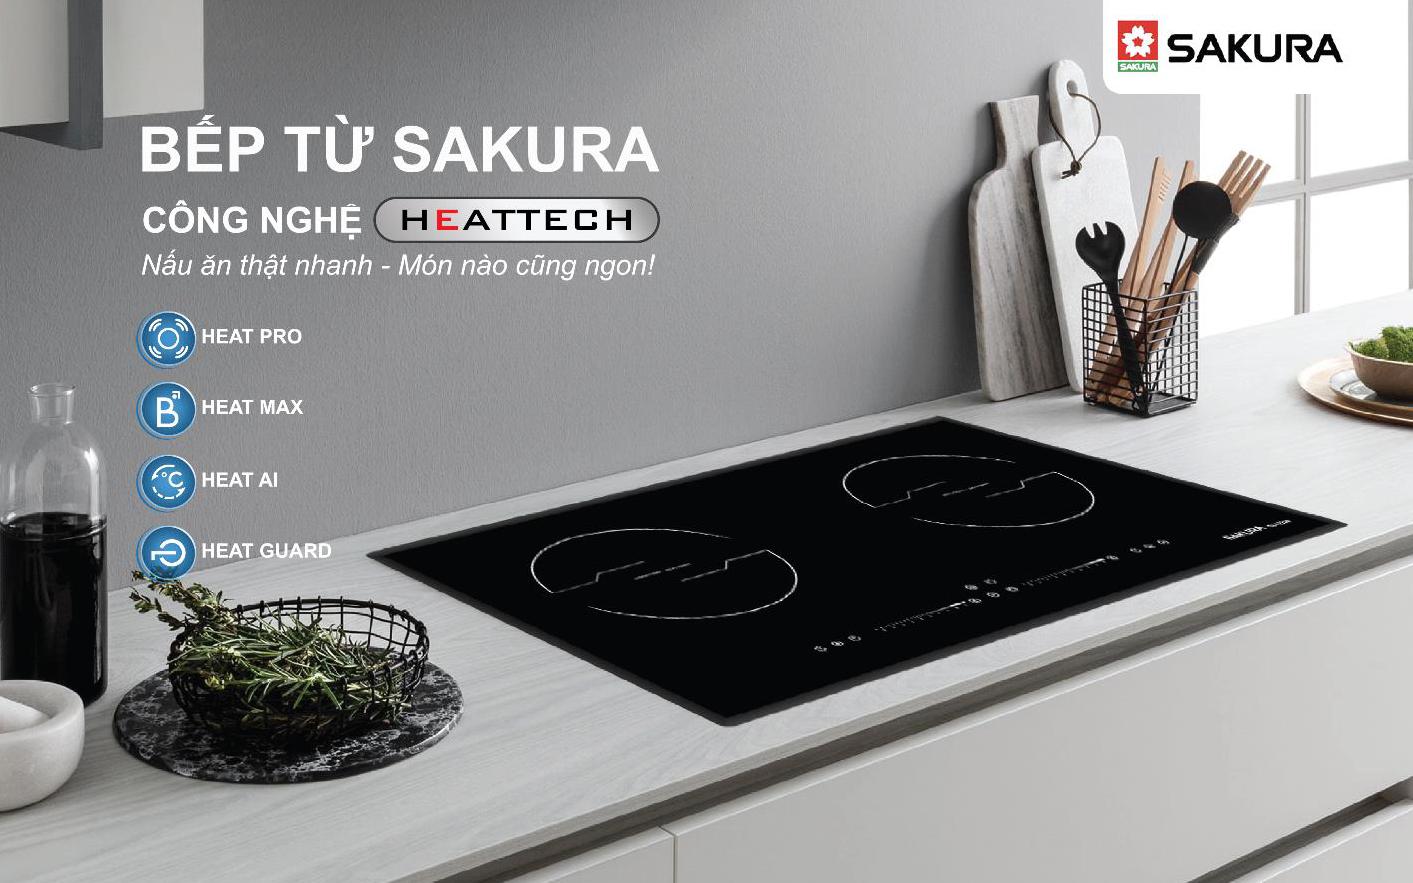 Ra mắt sản phẩm bếp từ Sakura với công nghệ HEATTECH đột phá